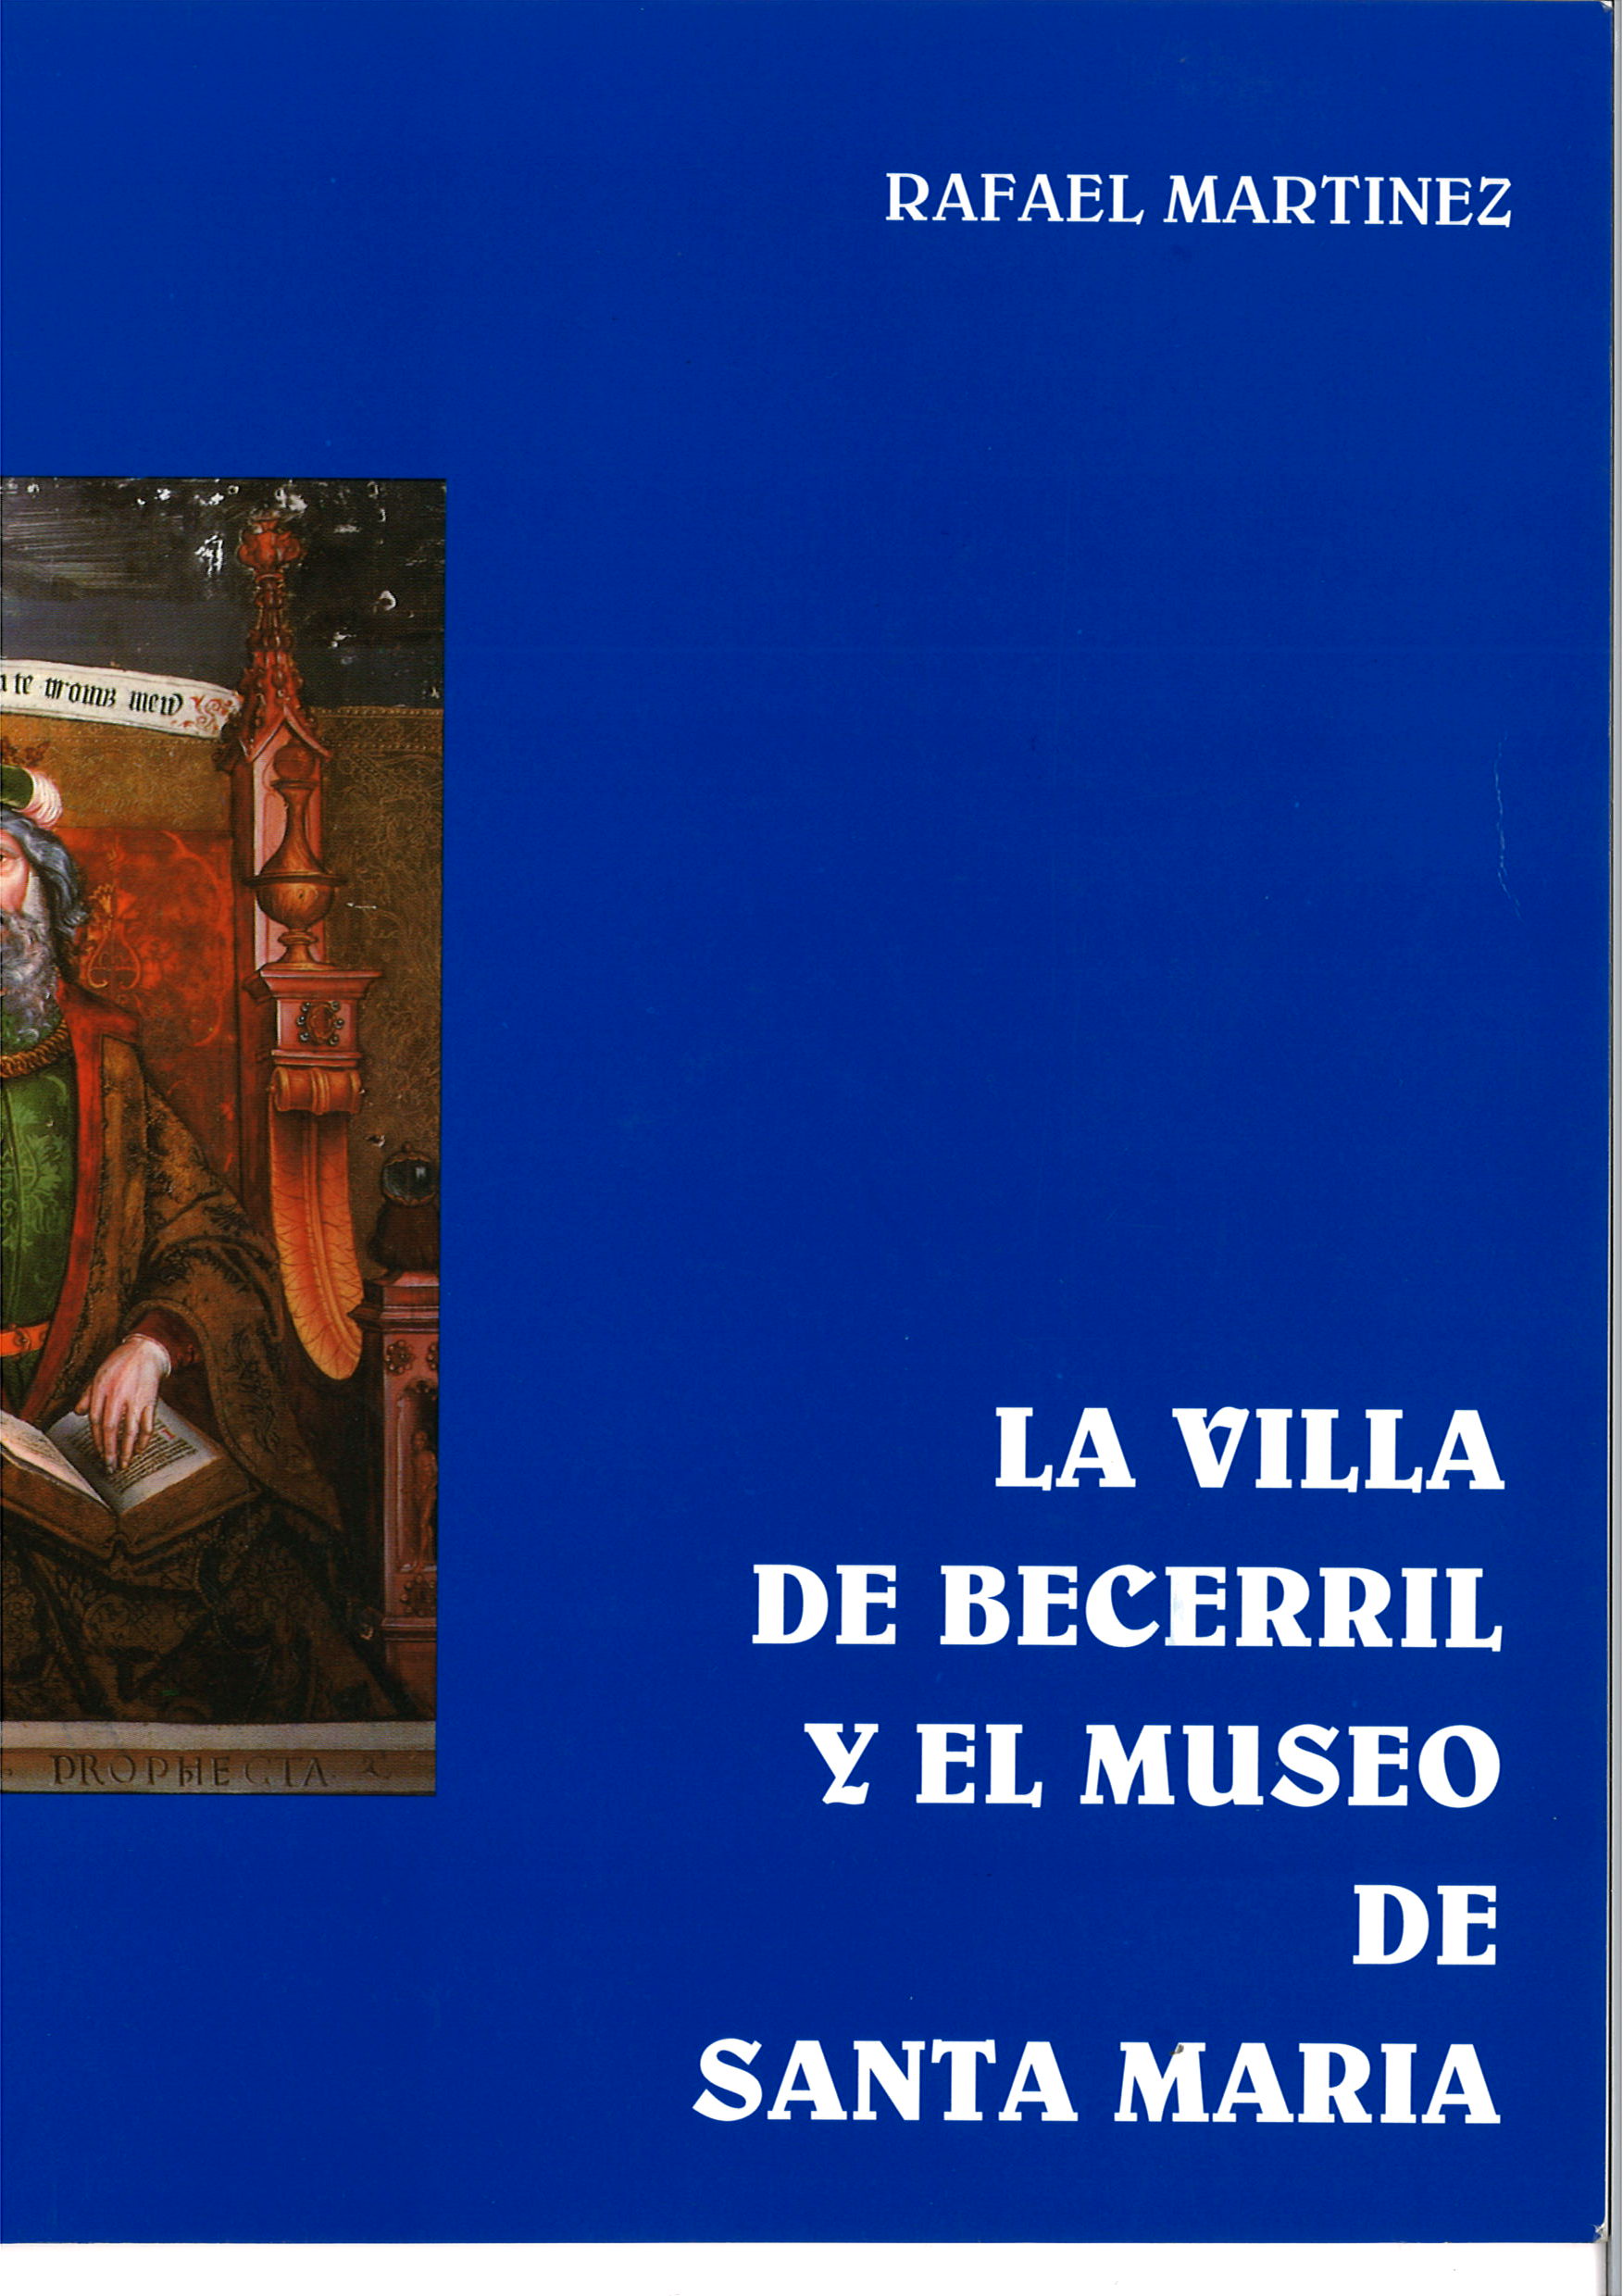 La Villa de Becerril y el Museo de Santa María. Rafael Martínez-image